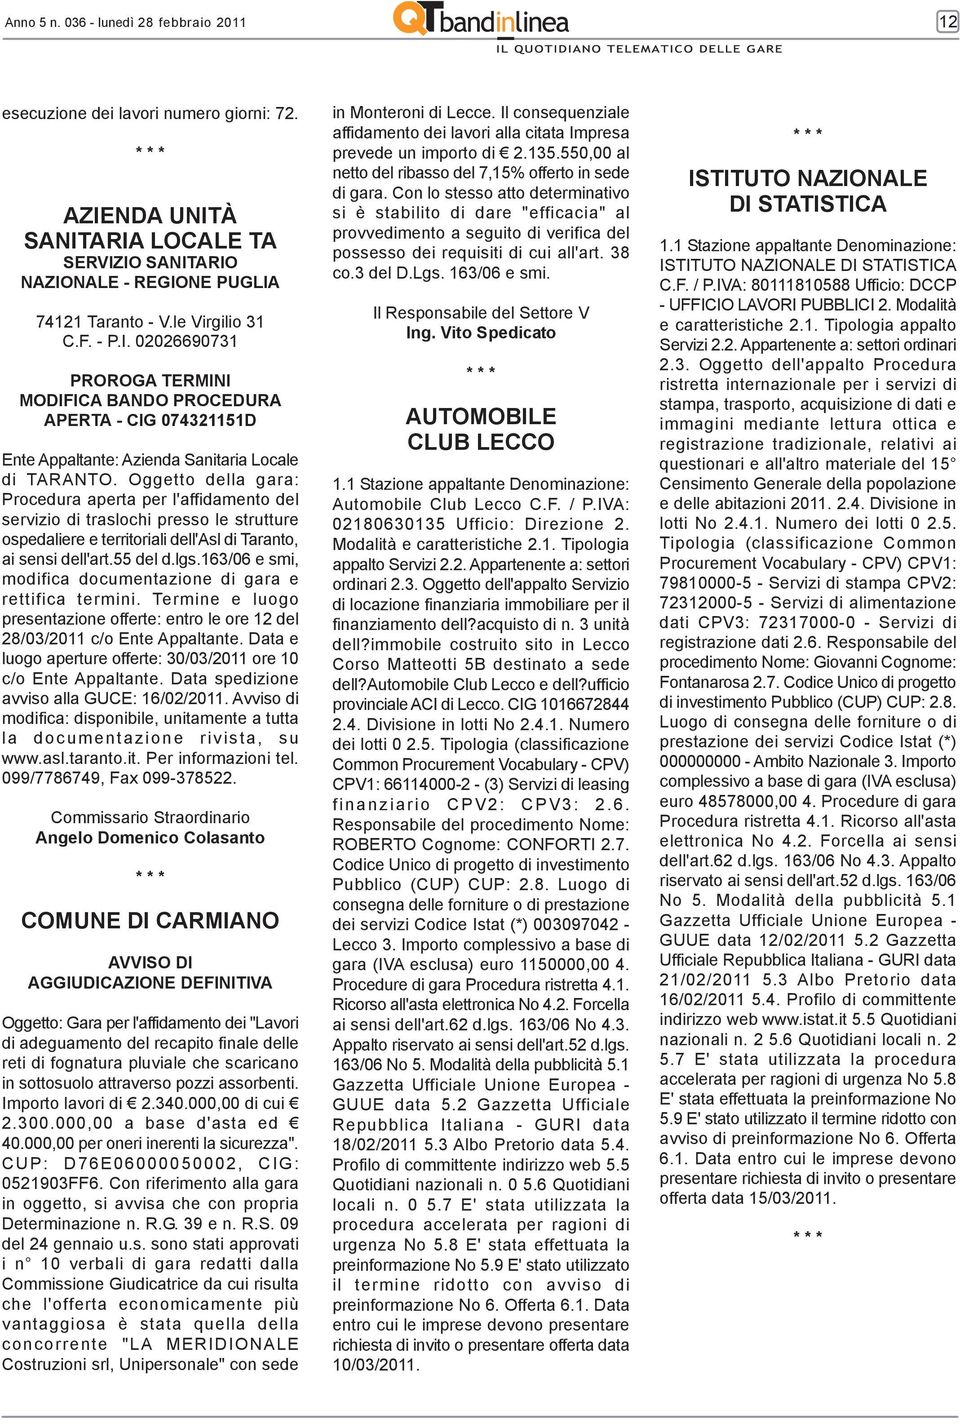 Oggetto della gara: Procedura aperta per l'affidamento del servizio di traslochi presso le strutture ospedaliere e territoriali dell'asl di Taranto, ai sensi dell'art.55 del d.lgs.